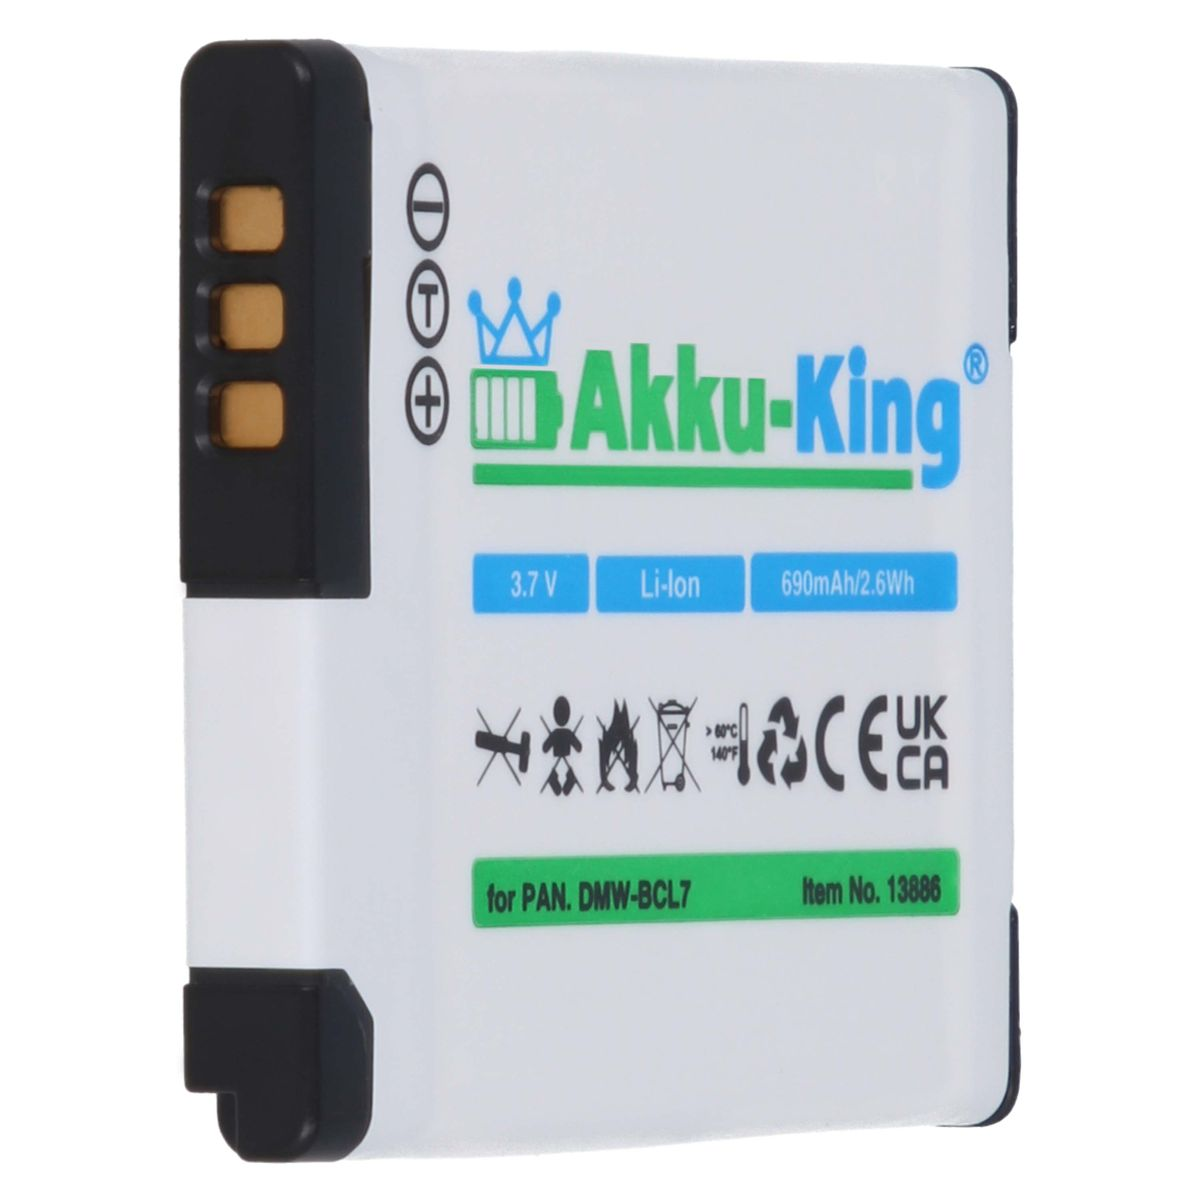 AKKU-KING Panasonic Li-Ion Volt, mit DMW-BCL7 kompatibel 690mAh 3.7 Akku Kamera-Akku,